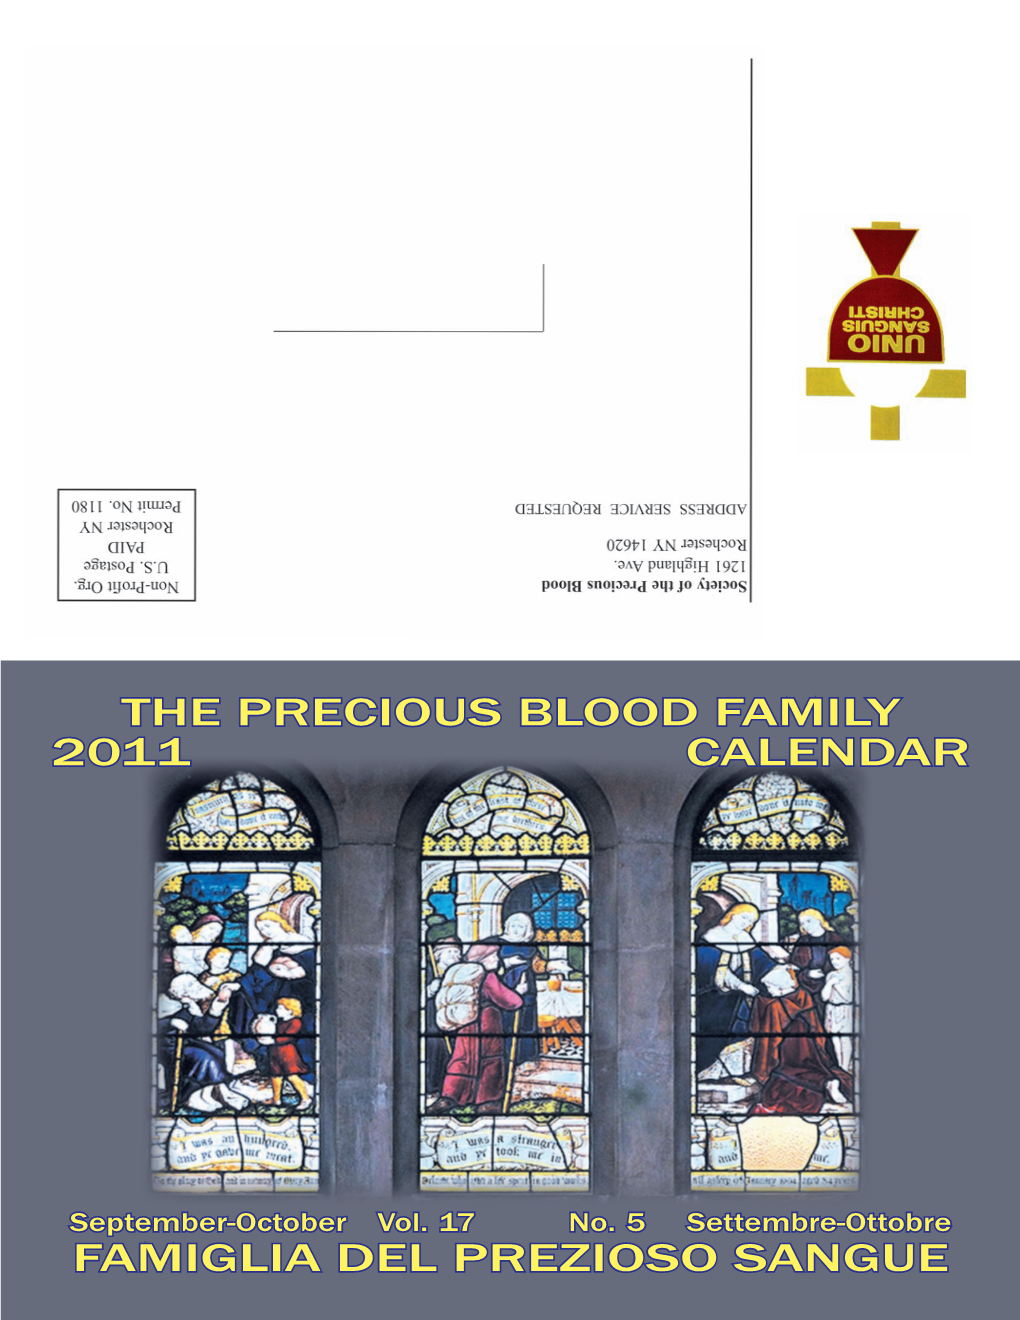 Famiglia Del Prezioso Sangue the Precious Blood